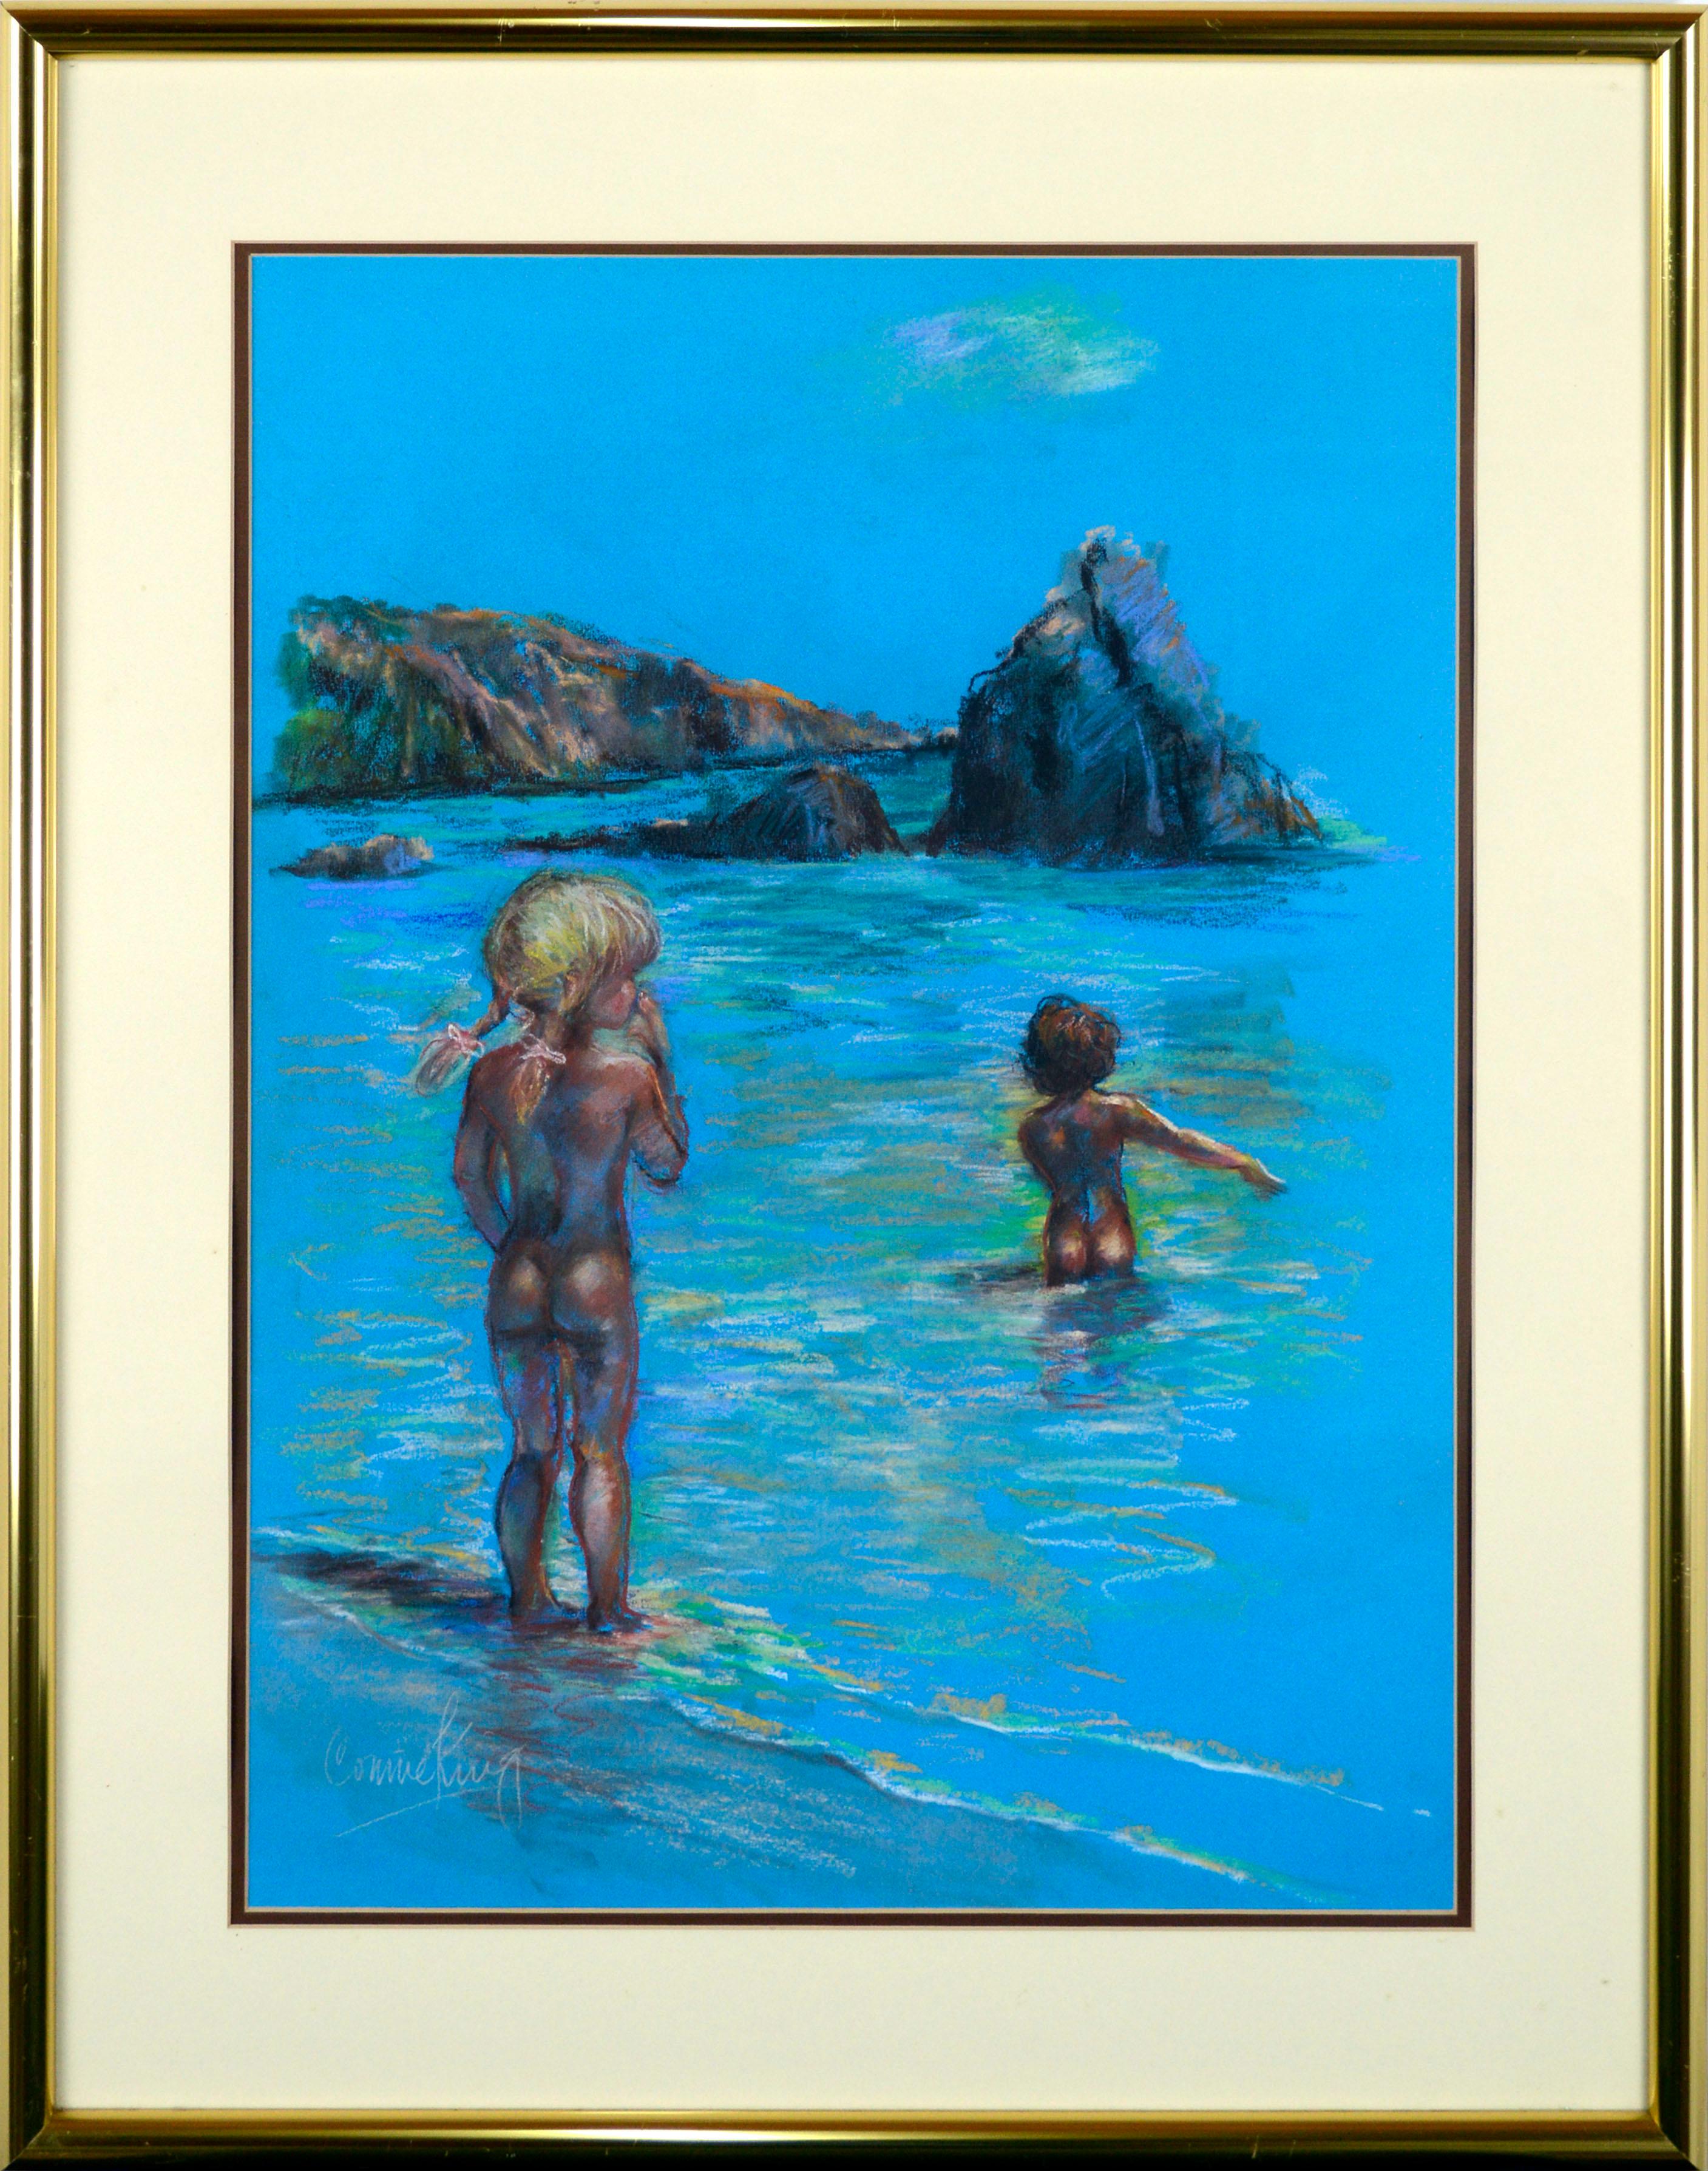 Kinder am Strand, pastellfarbene figurative Küstenlandschaft auf elektrischem Blau 